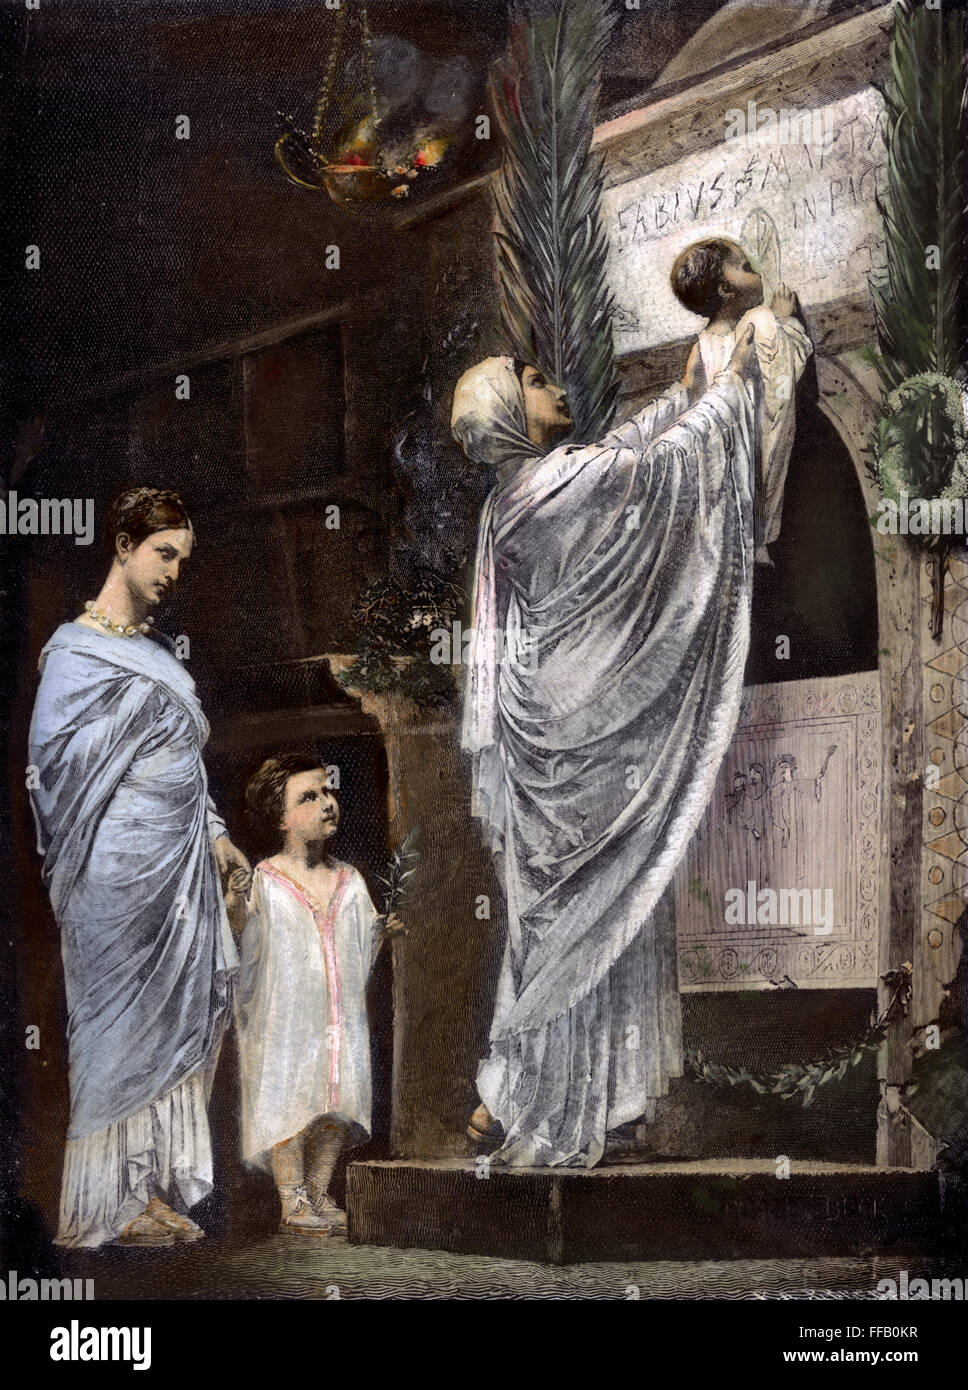 Rom: Christliche Witwe /nand ihr Kind zu Ehren gequälte Ehemann in den Katakomben von Rom: farbige Linie Gravur, 19. Jahrhundert. Stockfoto